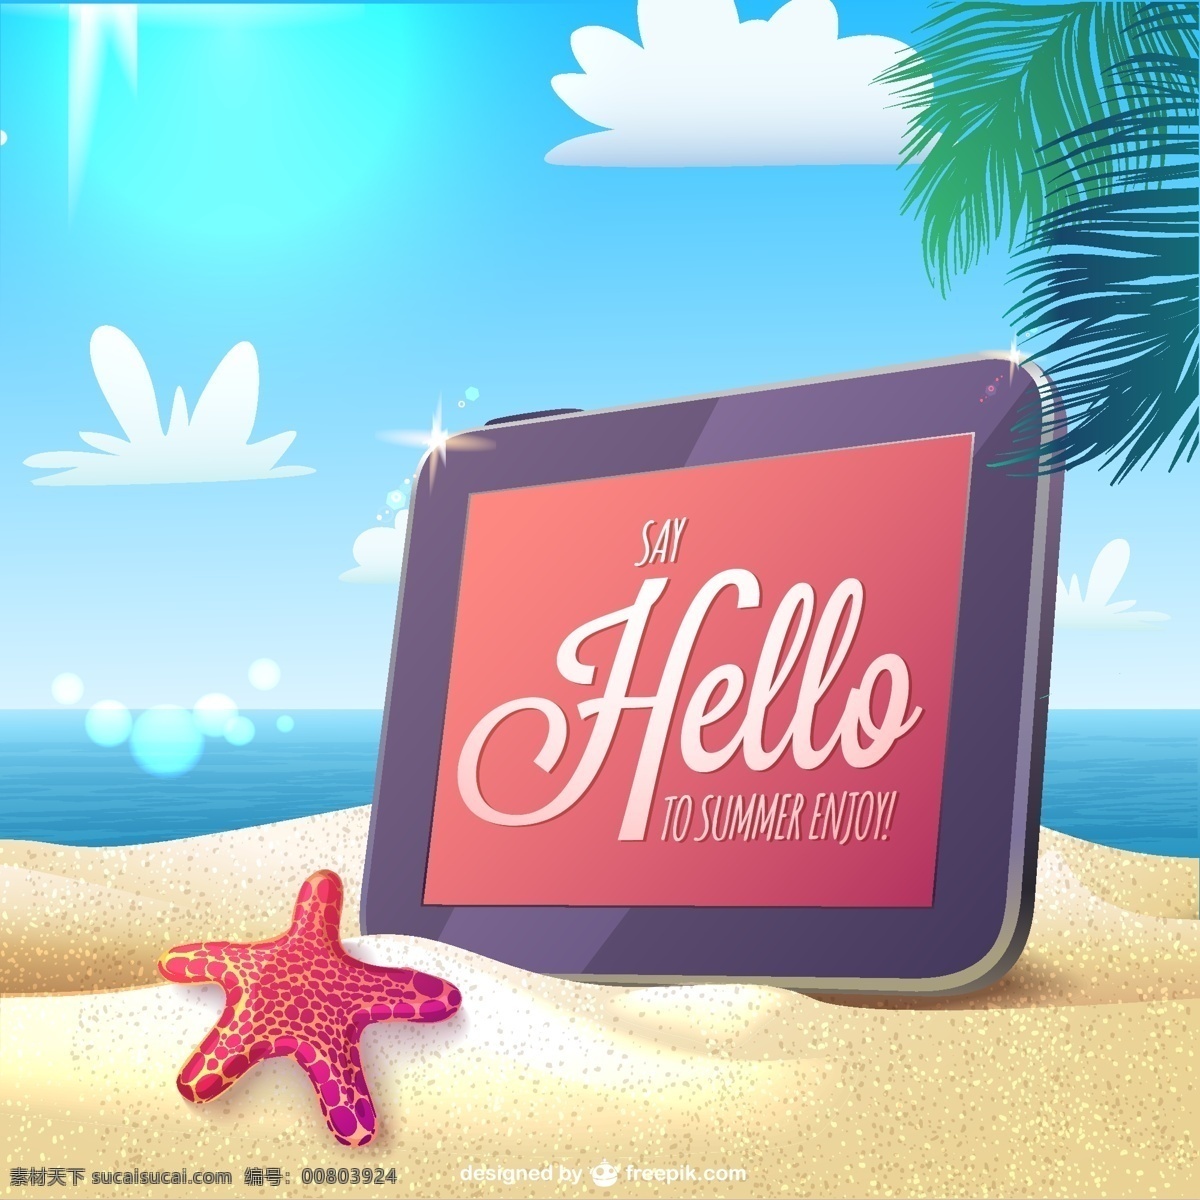 夏日 卡 海滩 上 平板电脑 背景 夏天 卡的设计 云 阳光 沙滩 大海 技术 模板 蓝色的背景 蓝色 互联网 文本 壁纸 布局 ipad 青色 天蓝色